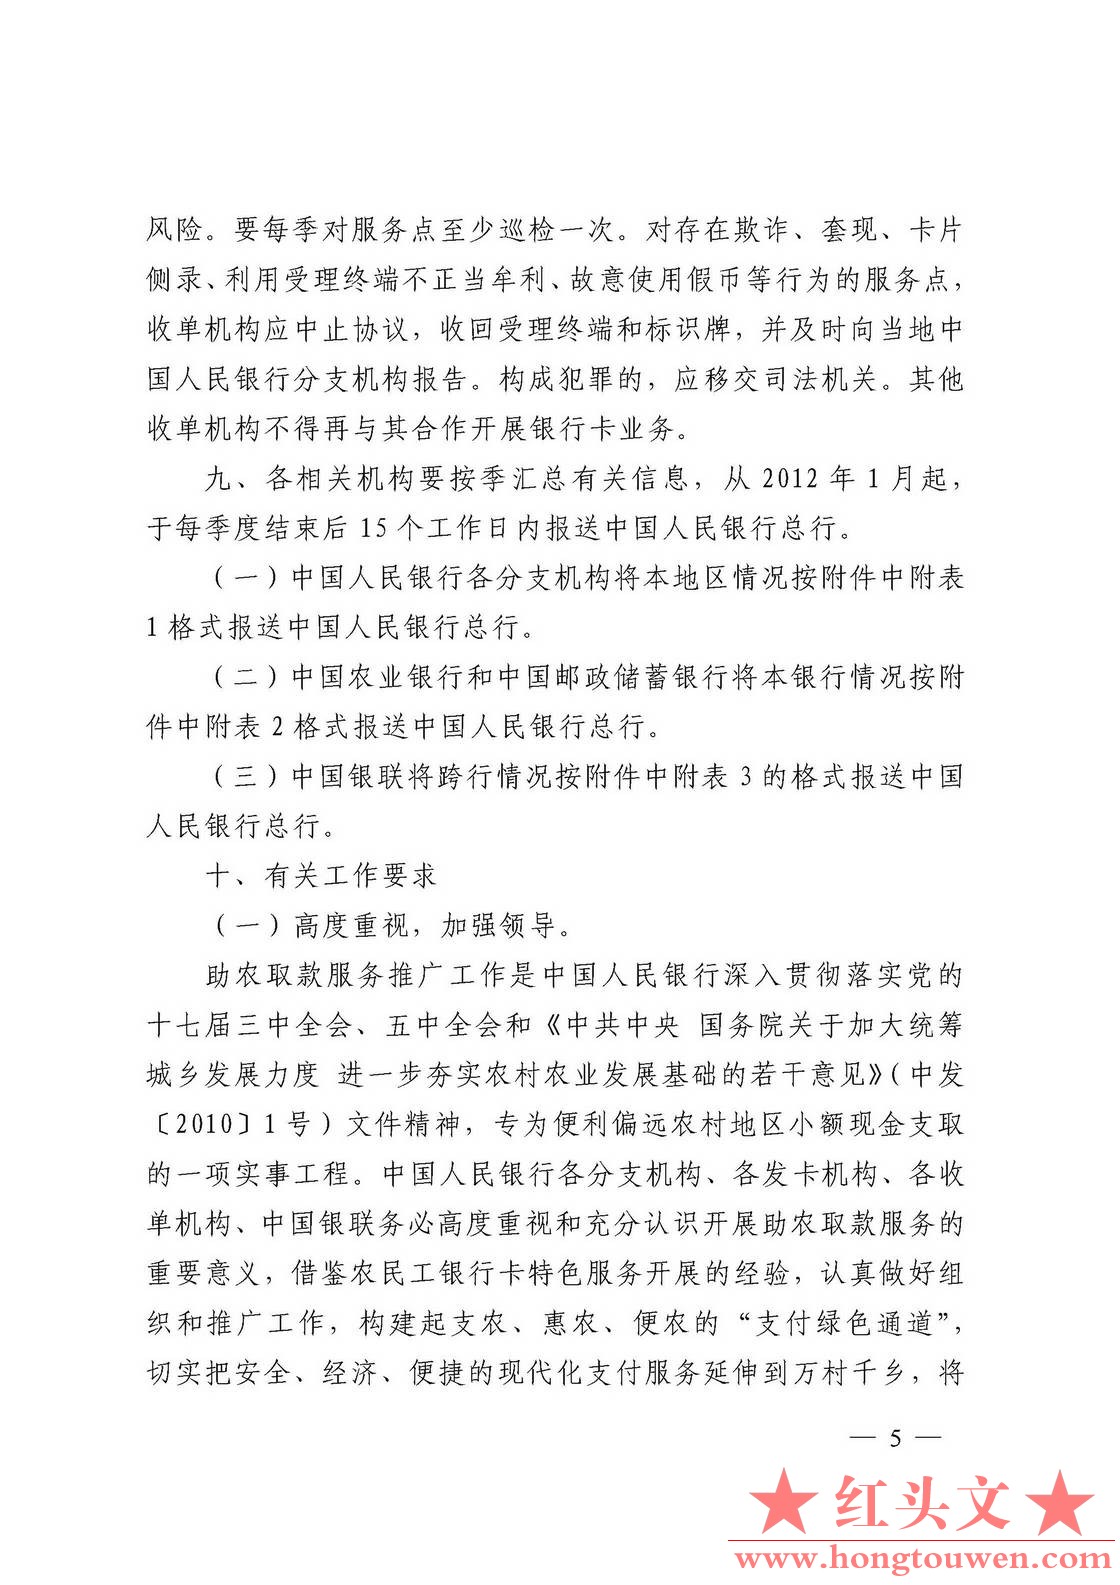 银发[2011]177号-中国人民银行关于推广银行卡助农取款服务的通知_页面_05.jpg.jpg